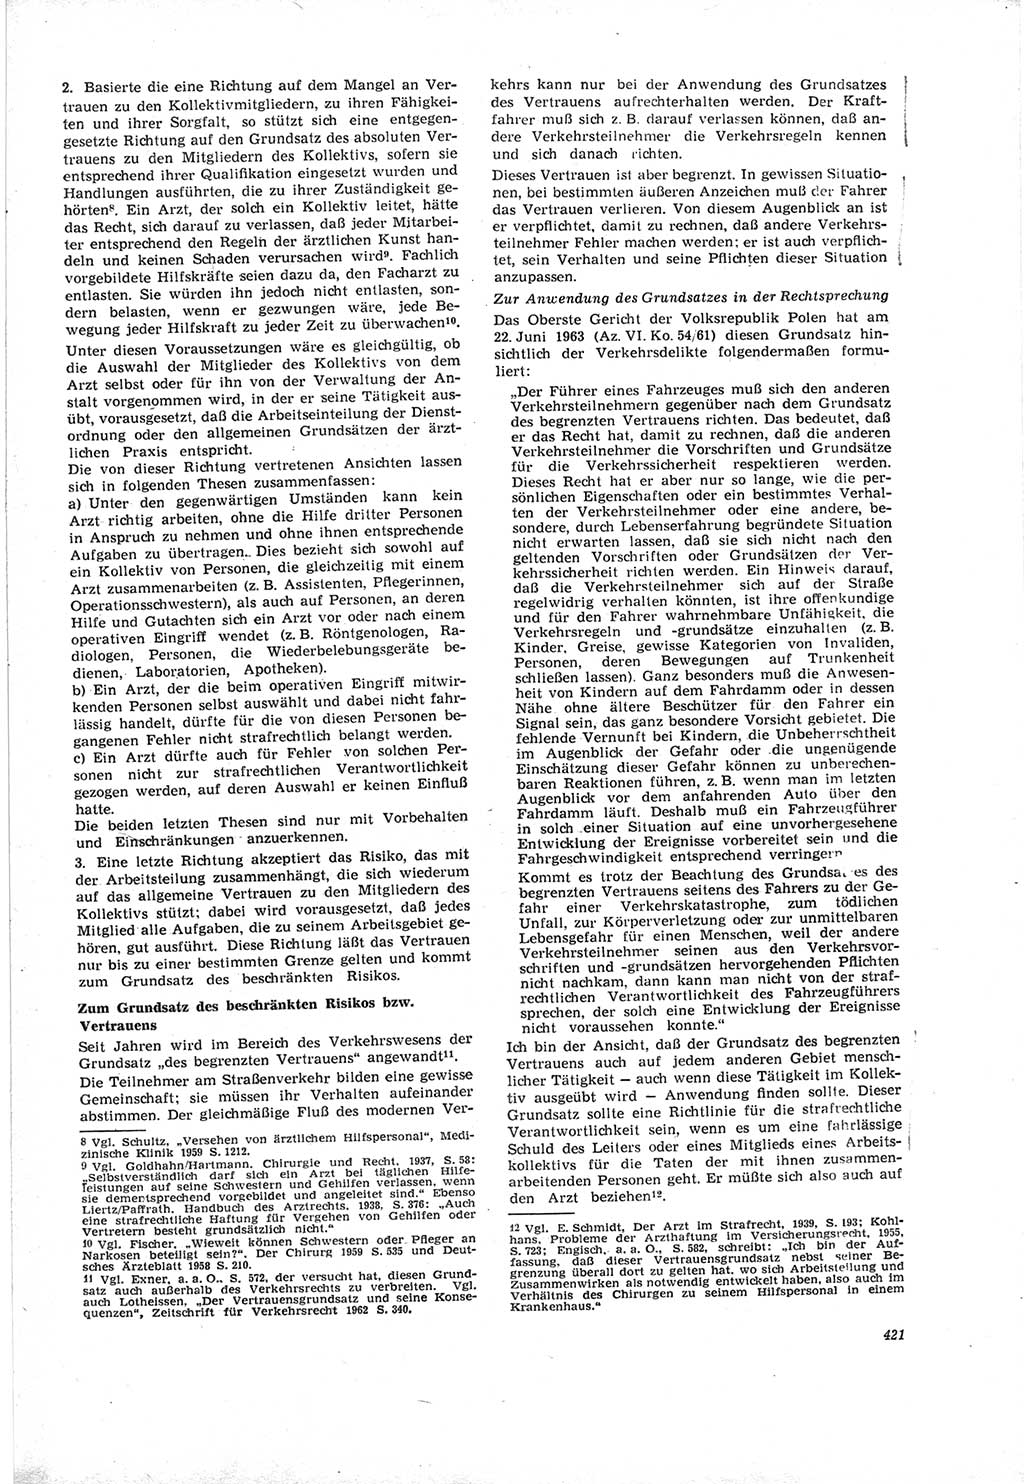 Neue Justiz (NJ), Zeitschrift für Recht und Rechtswissenschaft [Deutsche Demokratische Republik (DDR)], 19. Jahrgang 1965, Seite 421 (NJ DDR 1965, S. 421)